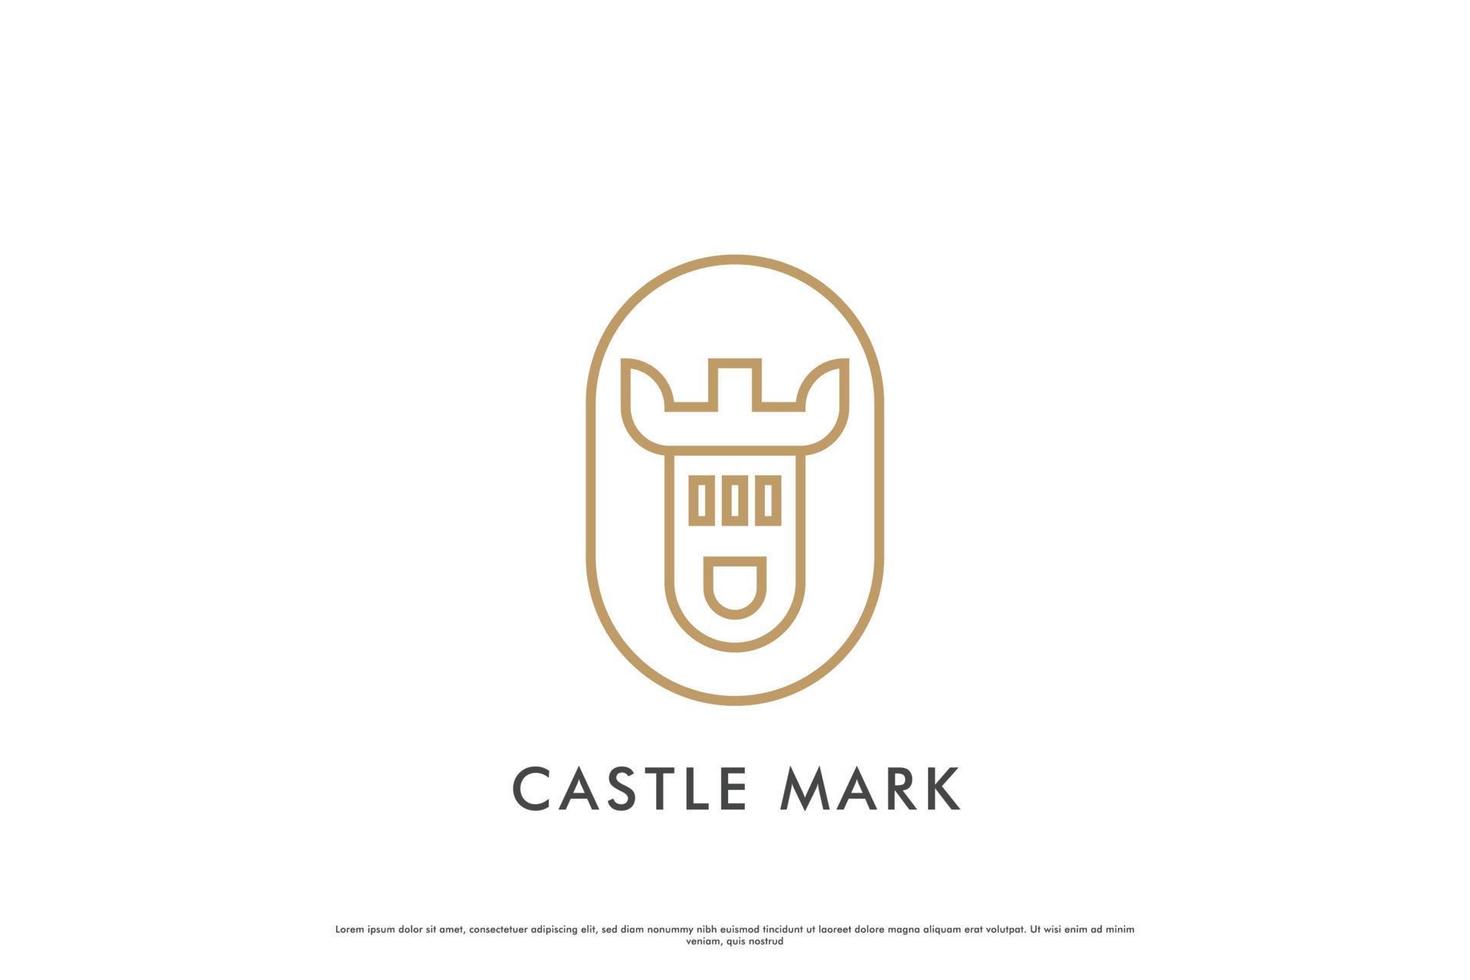 kasteel Mark logo ontwerp illustratie. silhouet lijn van ronde kasteel kasteel middeleeuws mijlpaal middeleeuws fort gebouw majestueus klassiek oude modern. oud erfgoed paleis standbeeld creatief idee ontwerp. vector